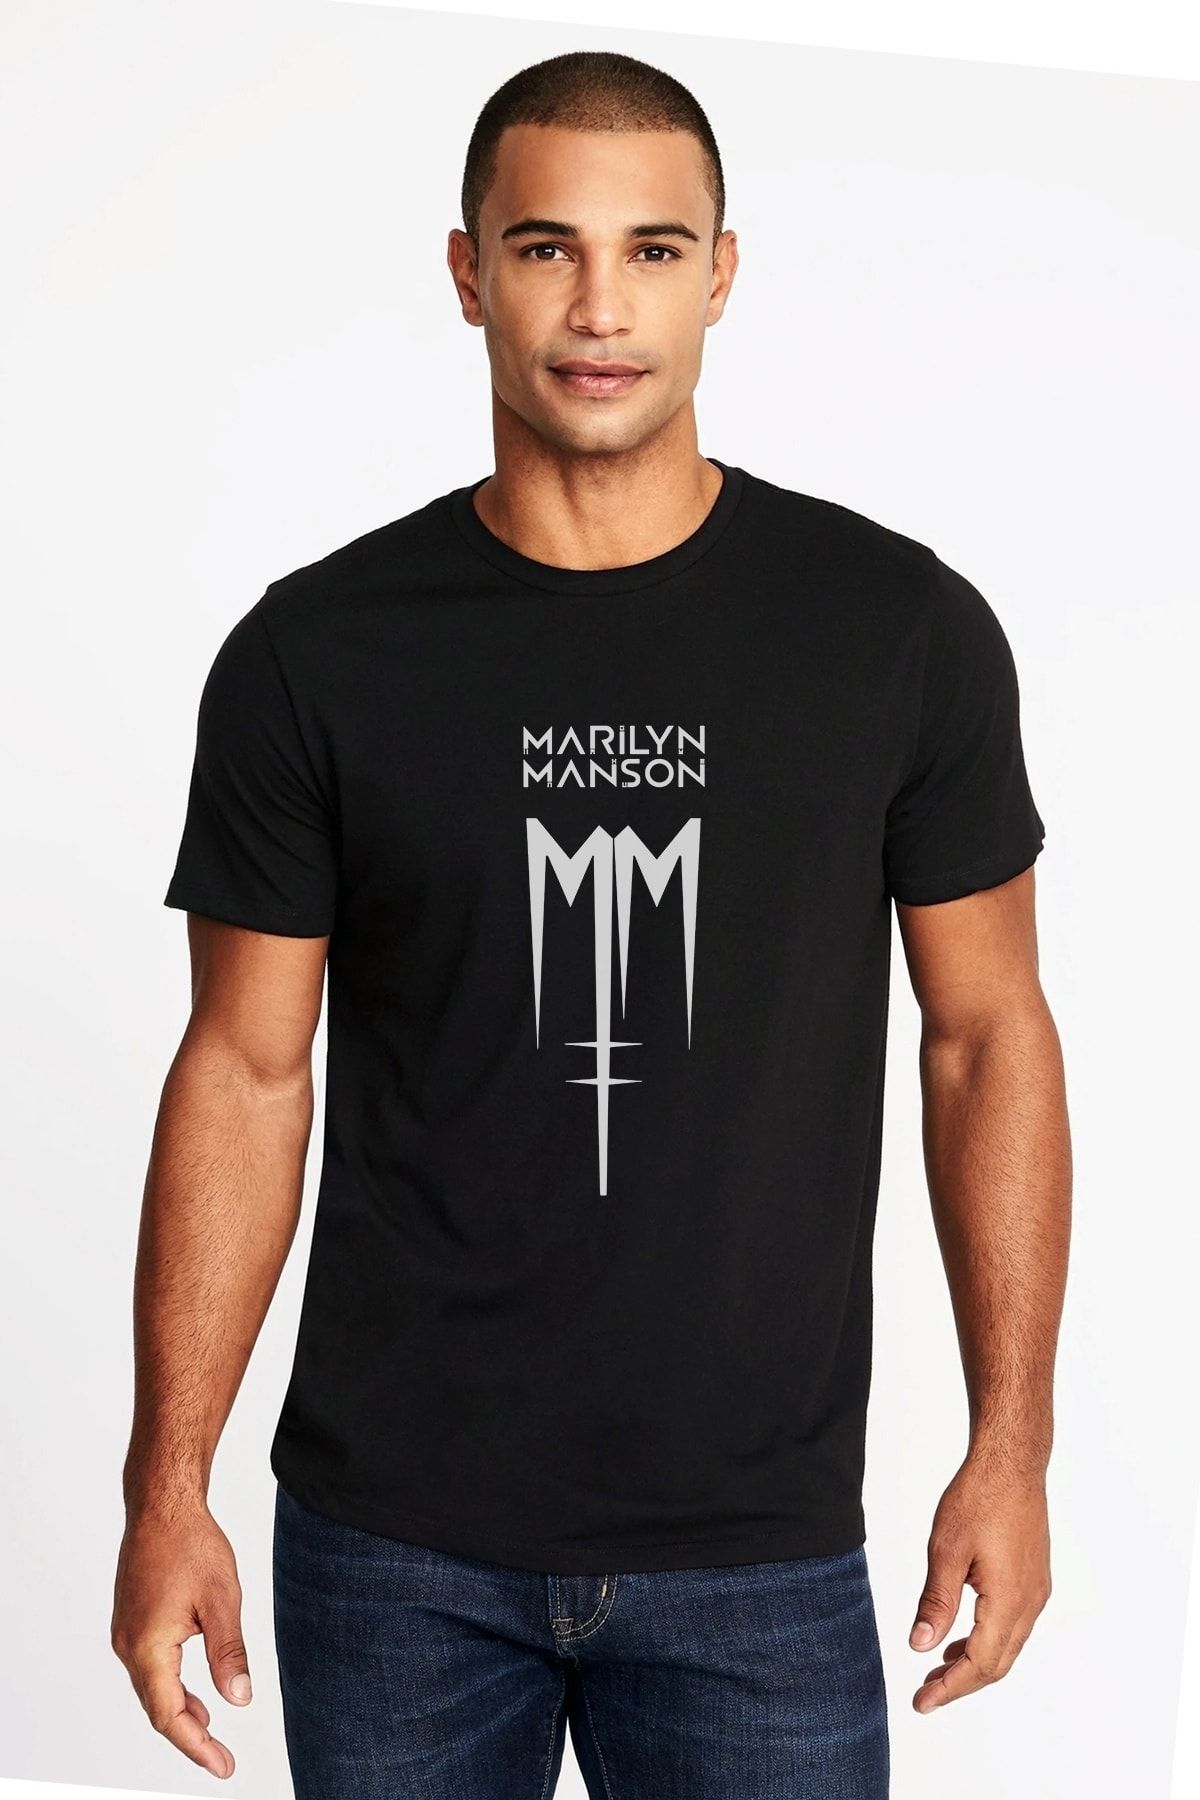 QIVI Marilyn Manson Mm Baskılı Siyah Erkek Örme Tshirt